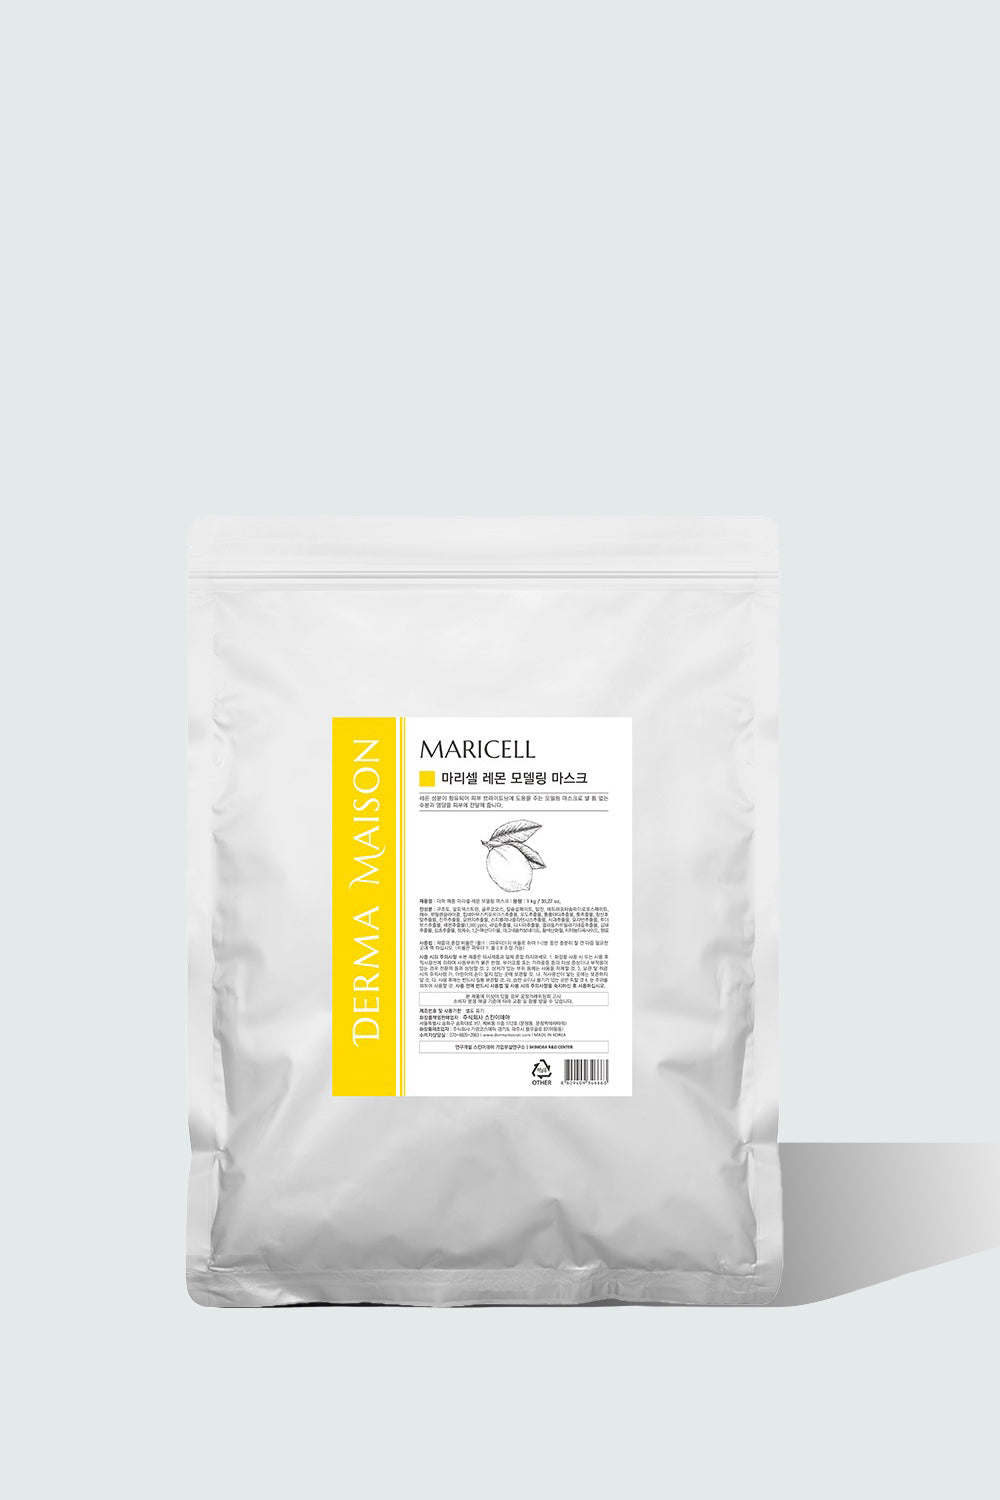 Maricell Lemon Modeling Pack - 1kg DERMA MAISON